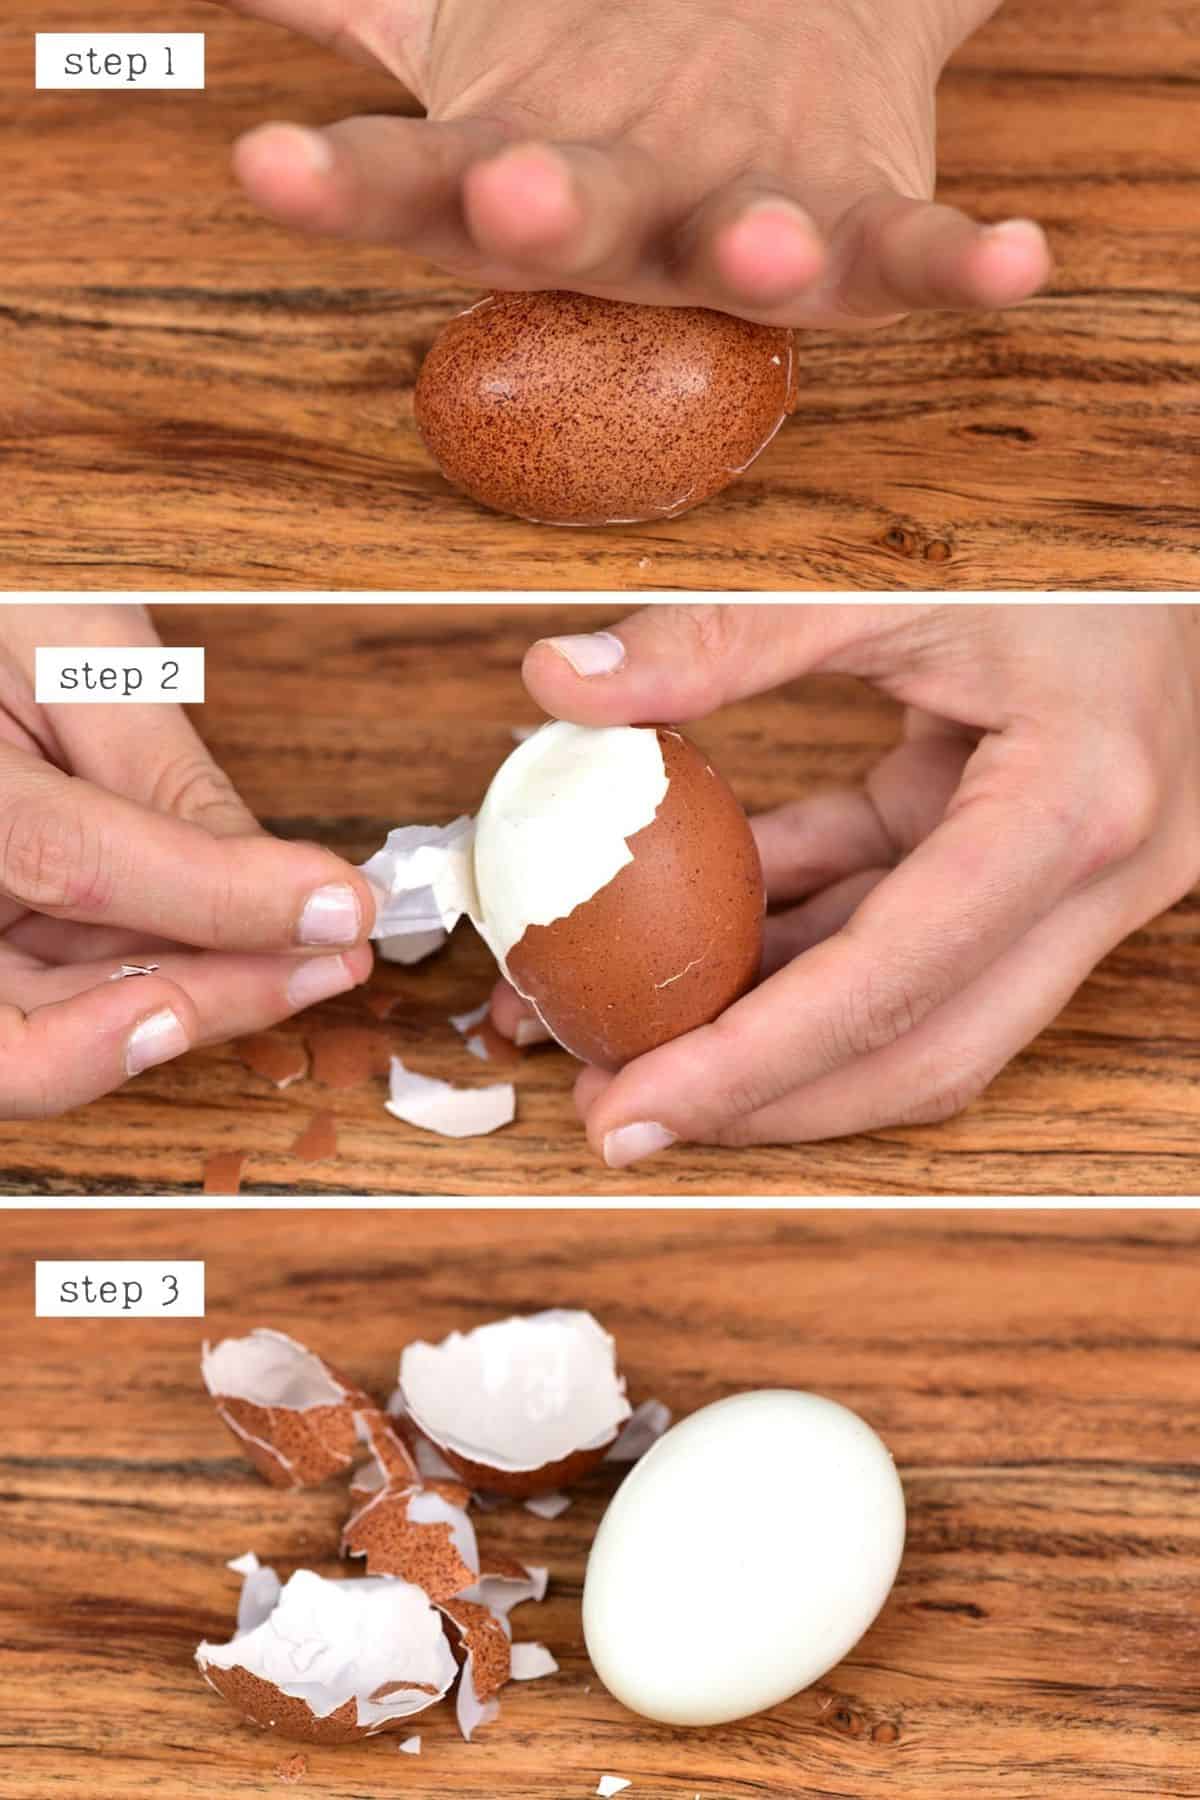 Steps for peeling an egg